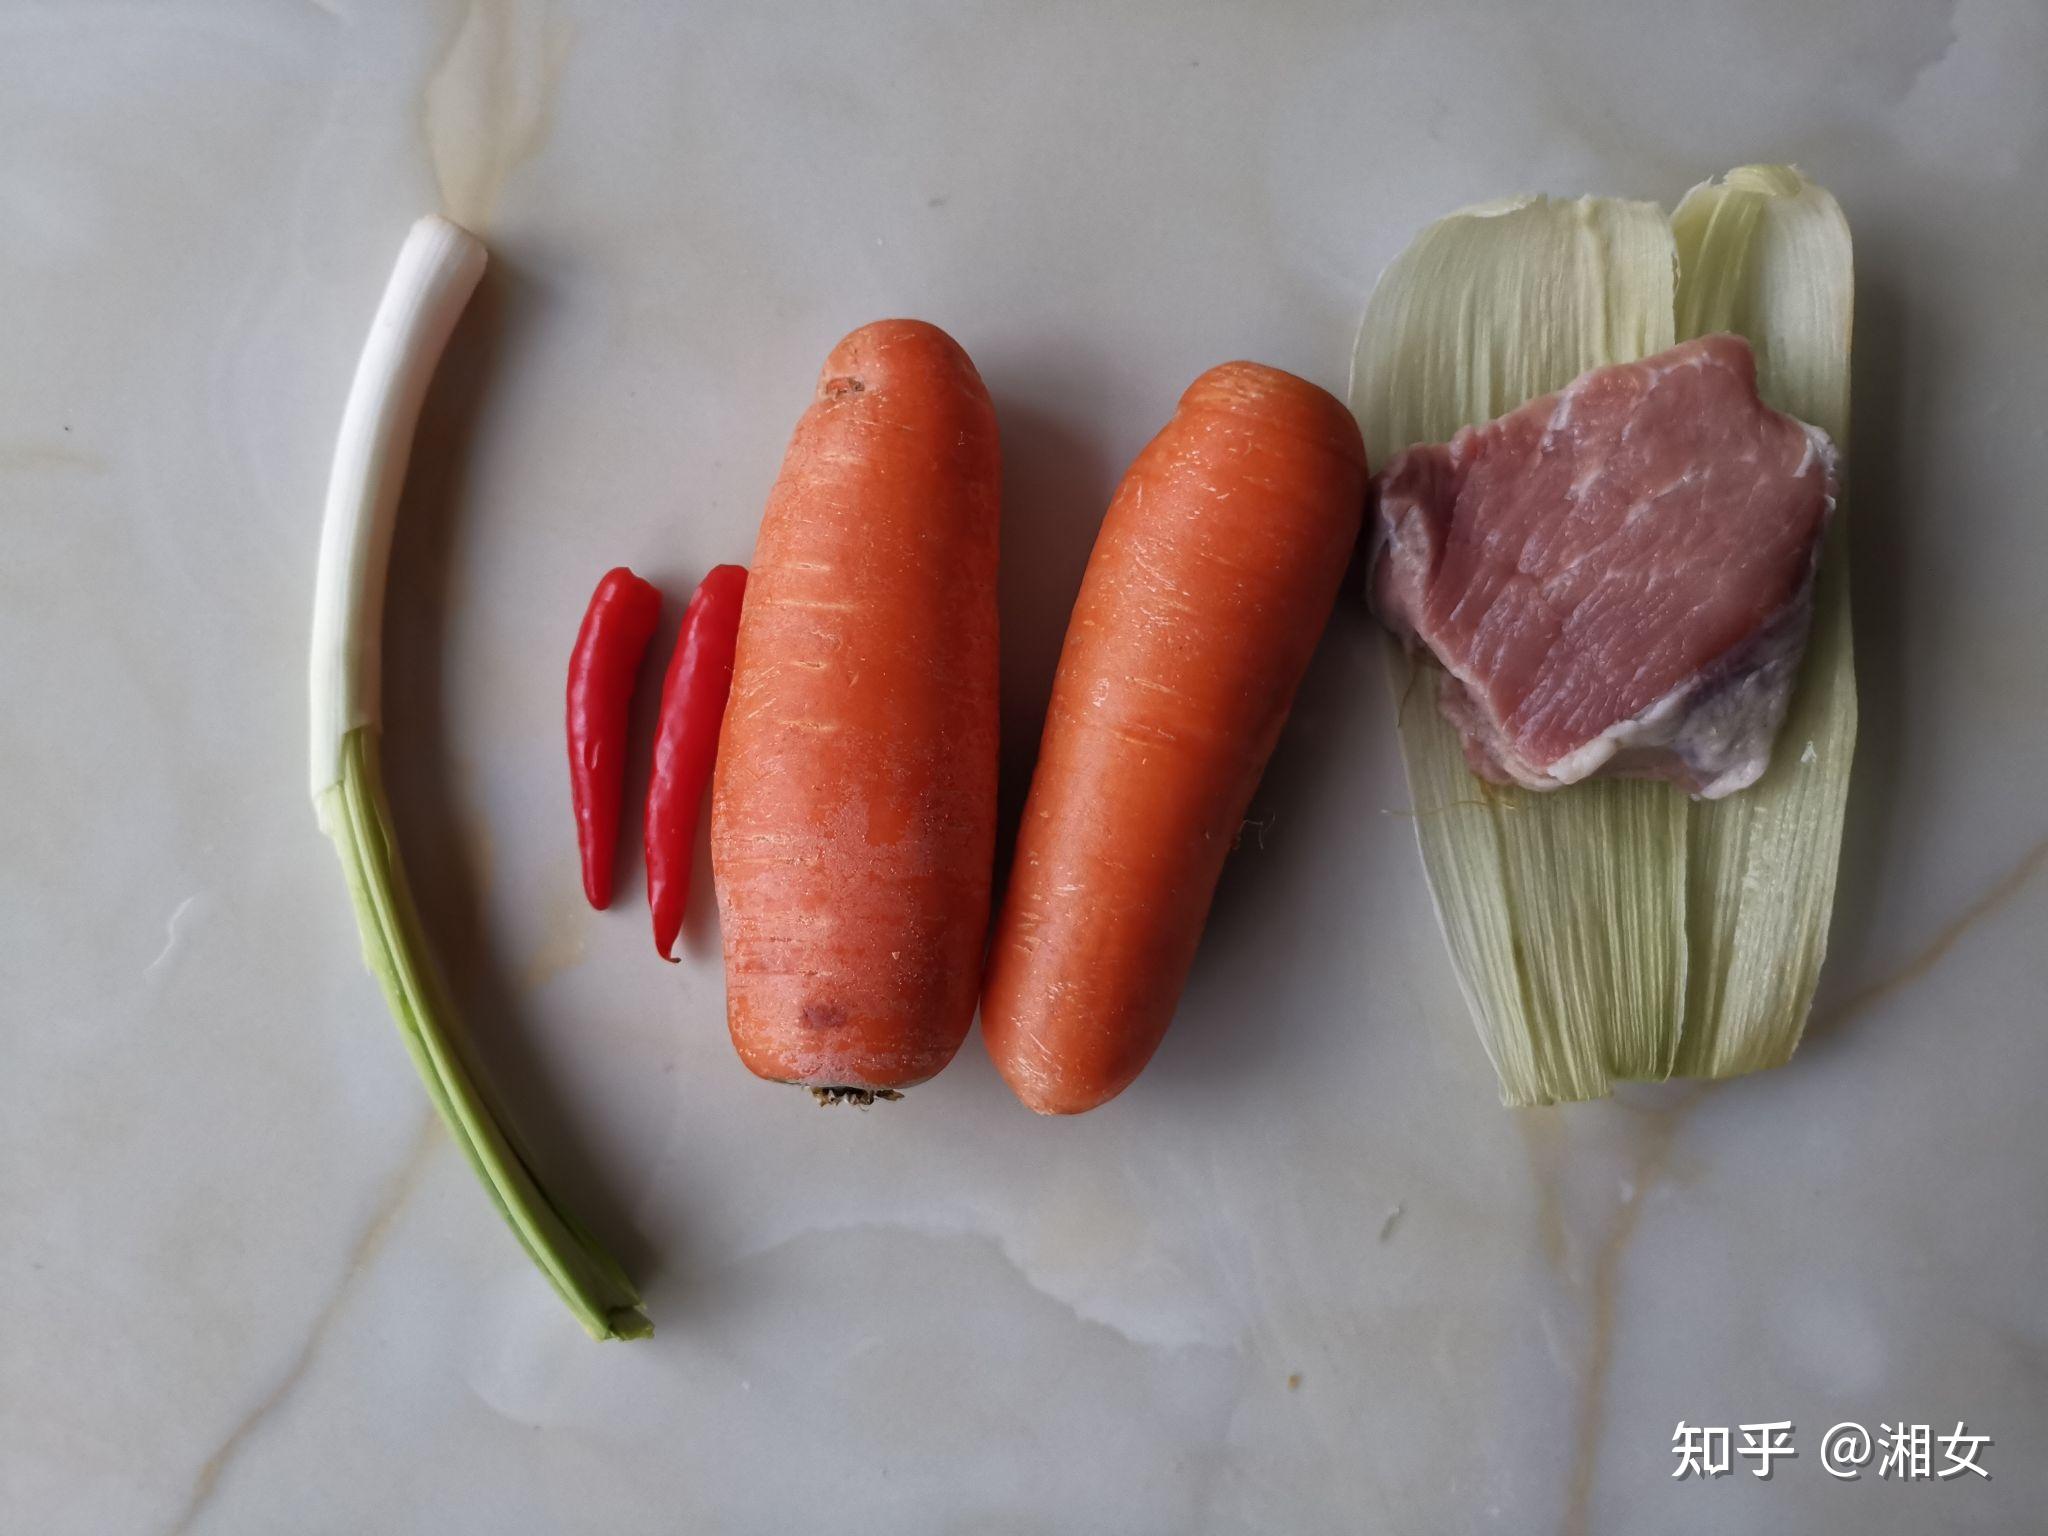 土豆丝炒胡萝卜丝,土豆丝炒胡萝卜丝的家常做法 - 美食杰土豆丝炒胡萝卜丝做法大全